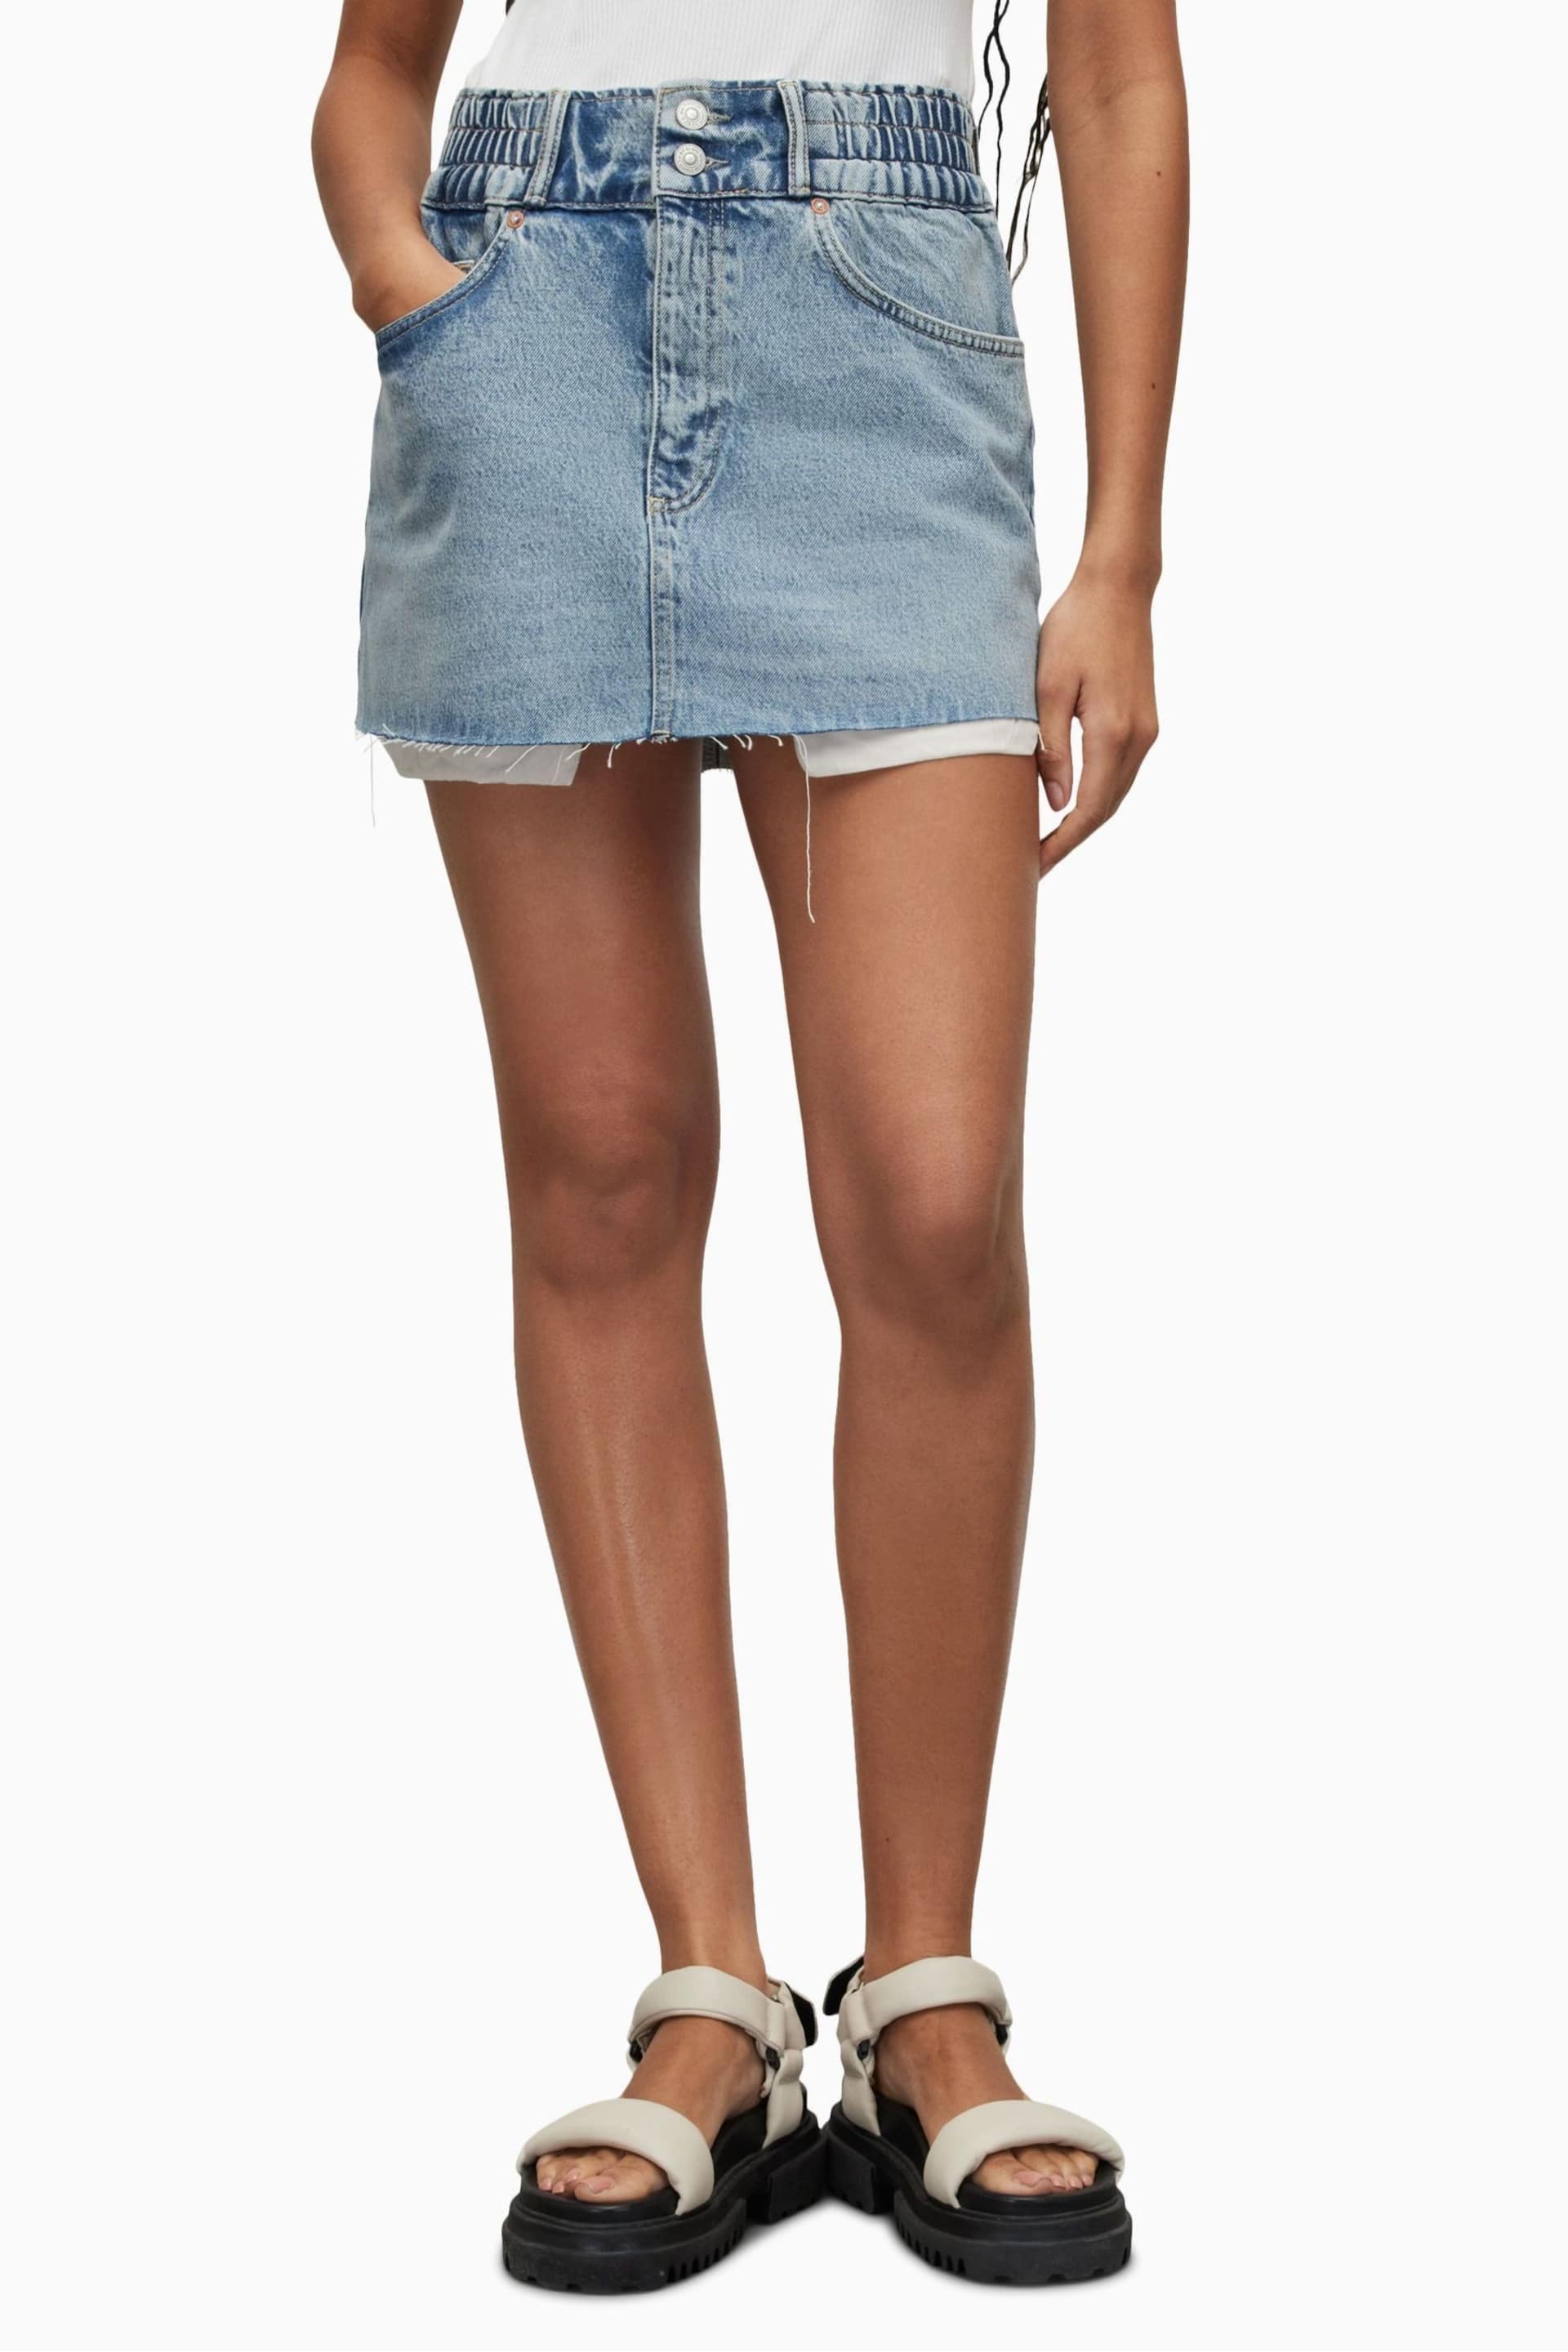 AllSaints Blue Hailey Mini Skirt - Image 1 of 7